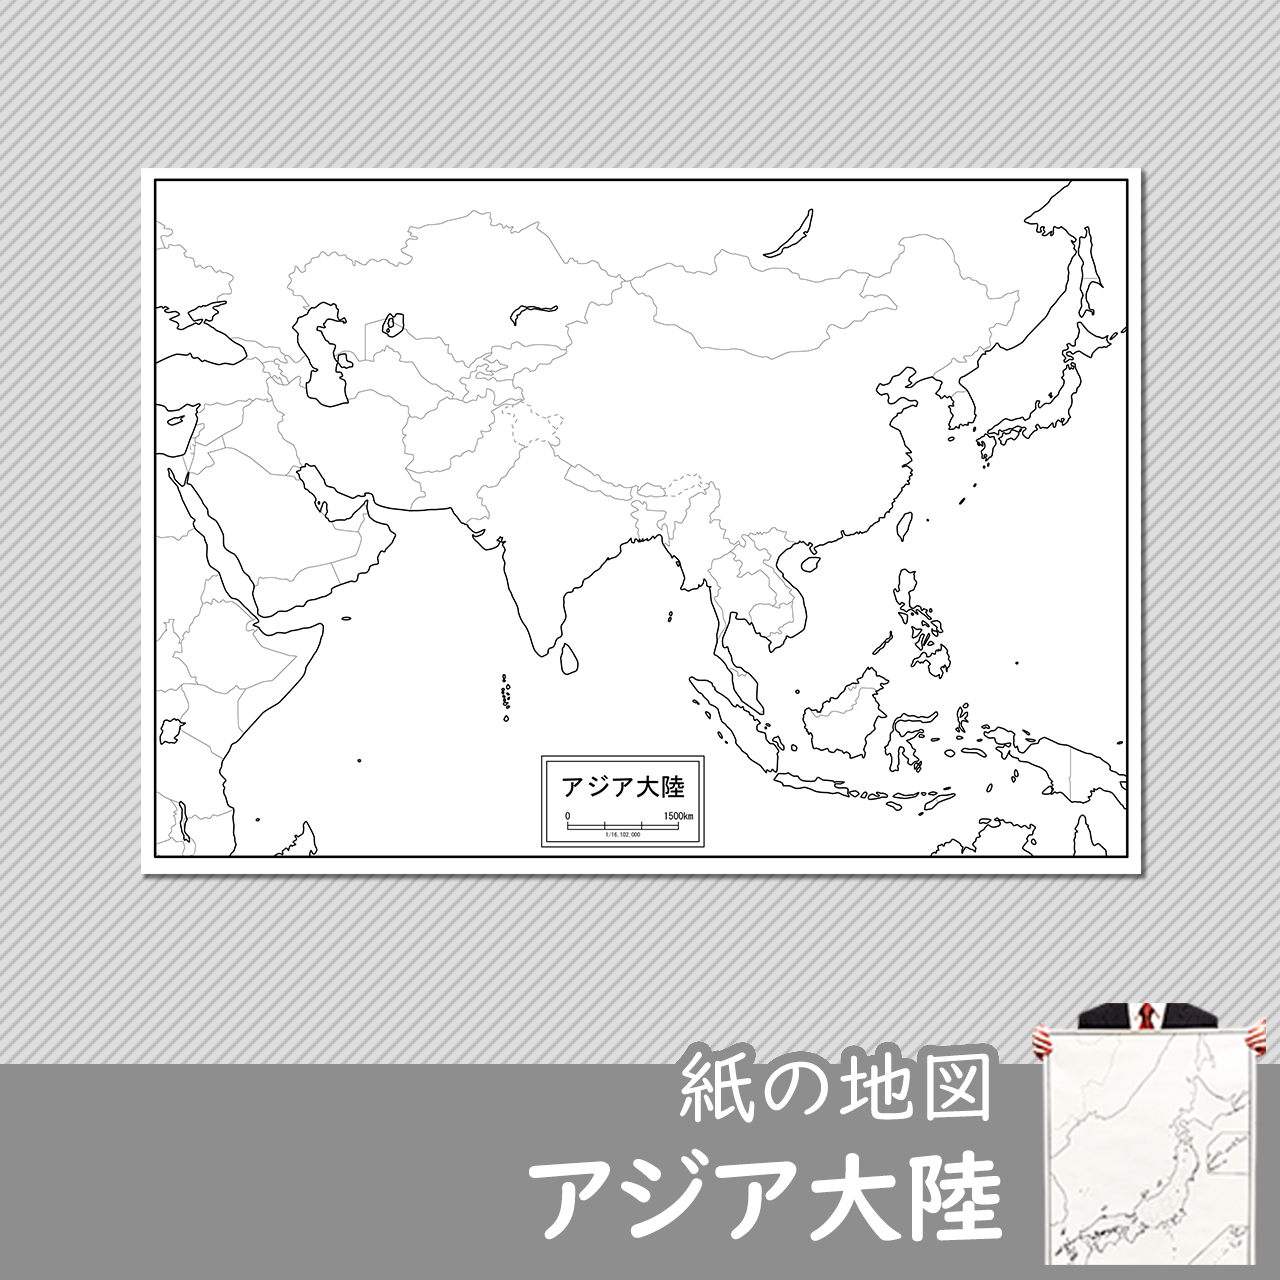 アジア大陸の紙の白地図